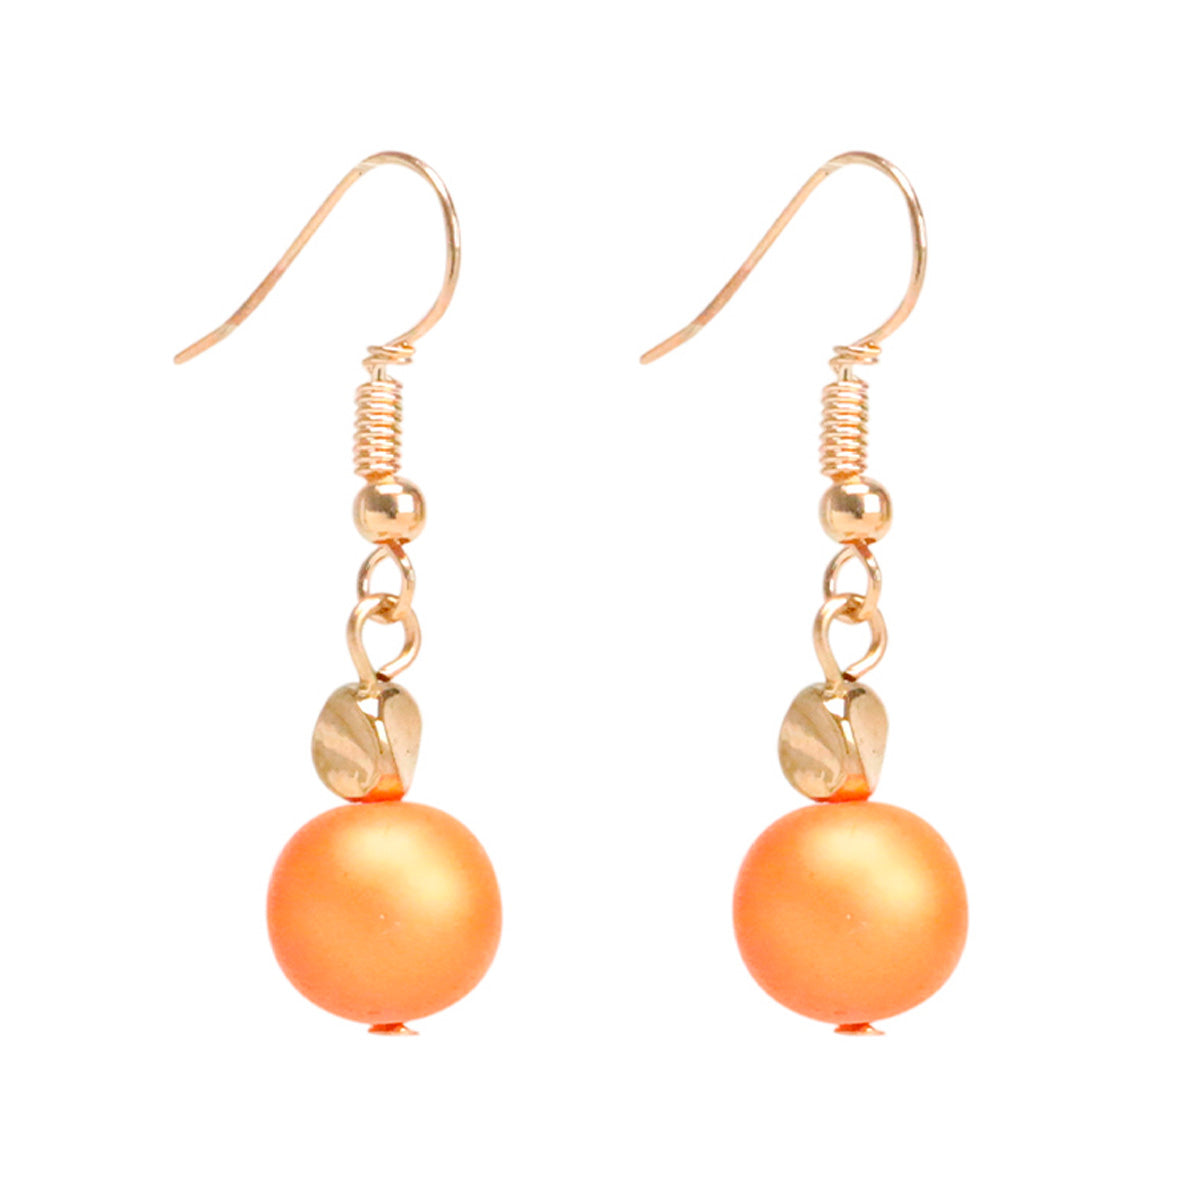 Hanging orange pearl earrings